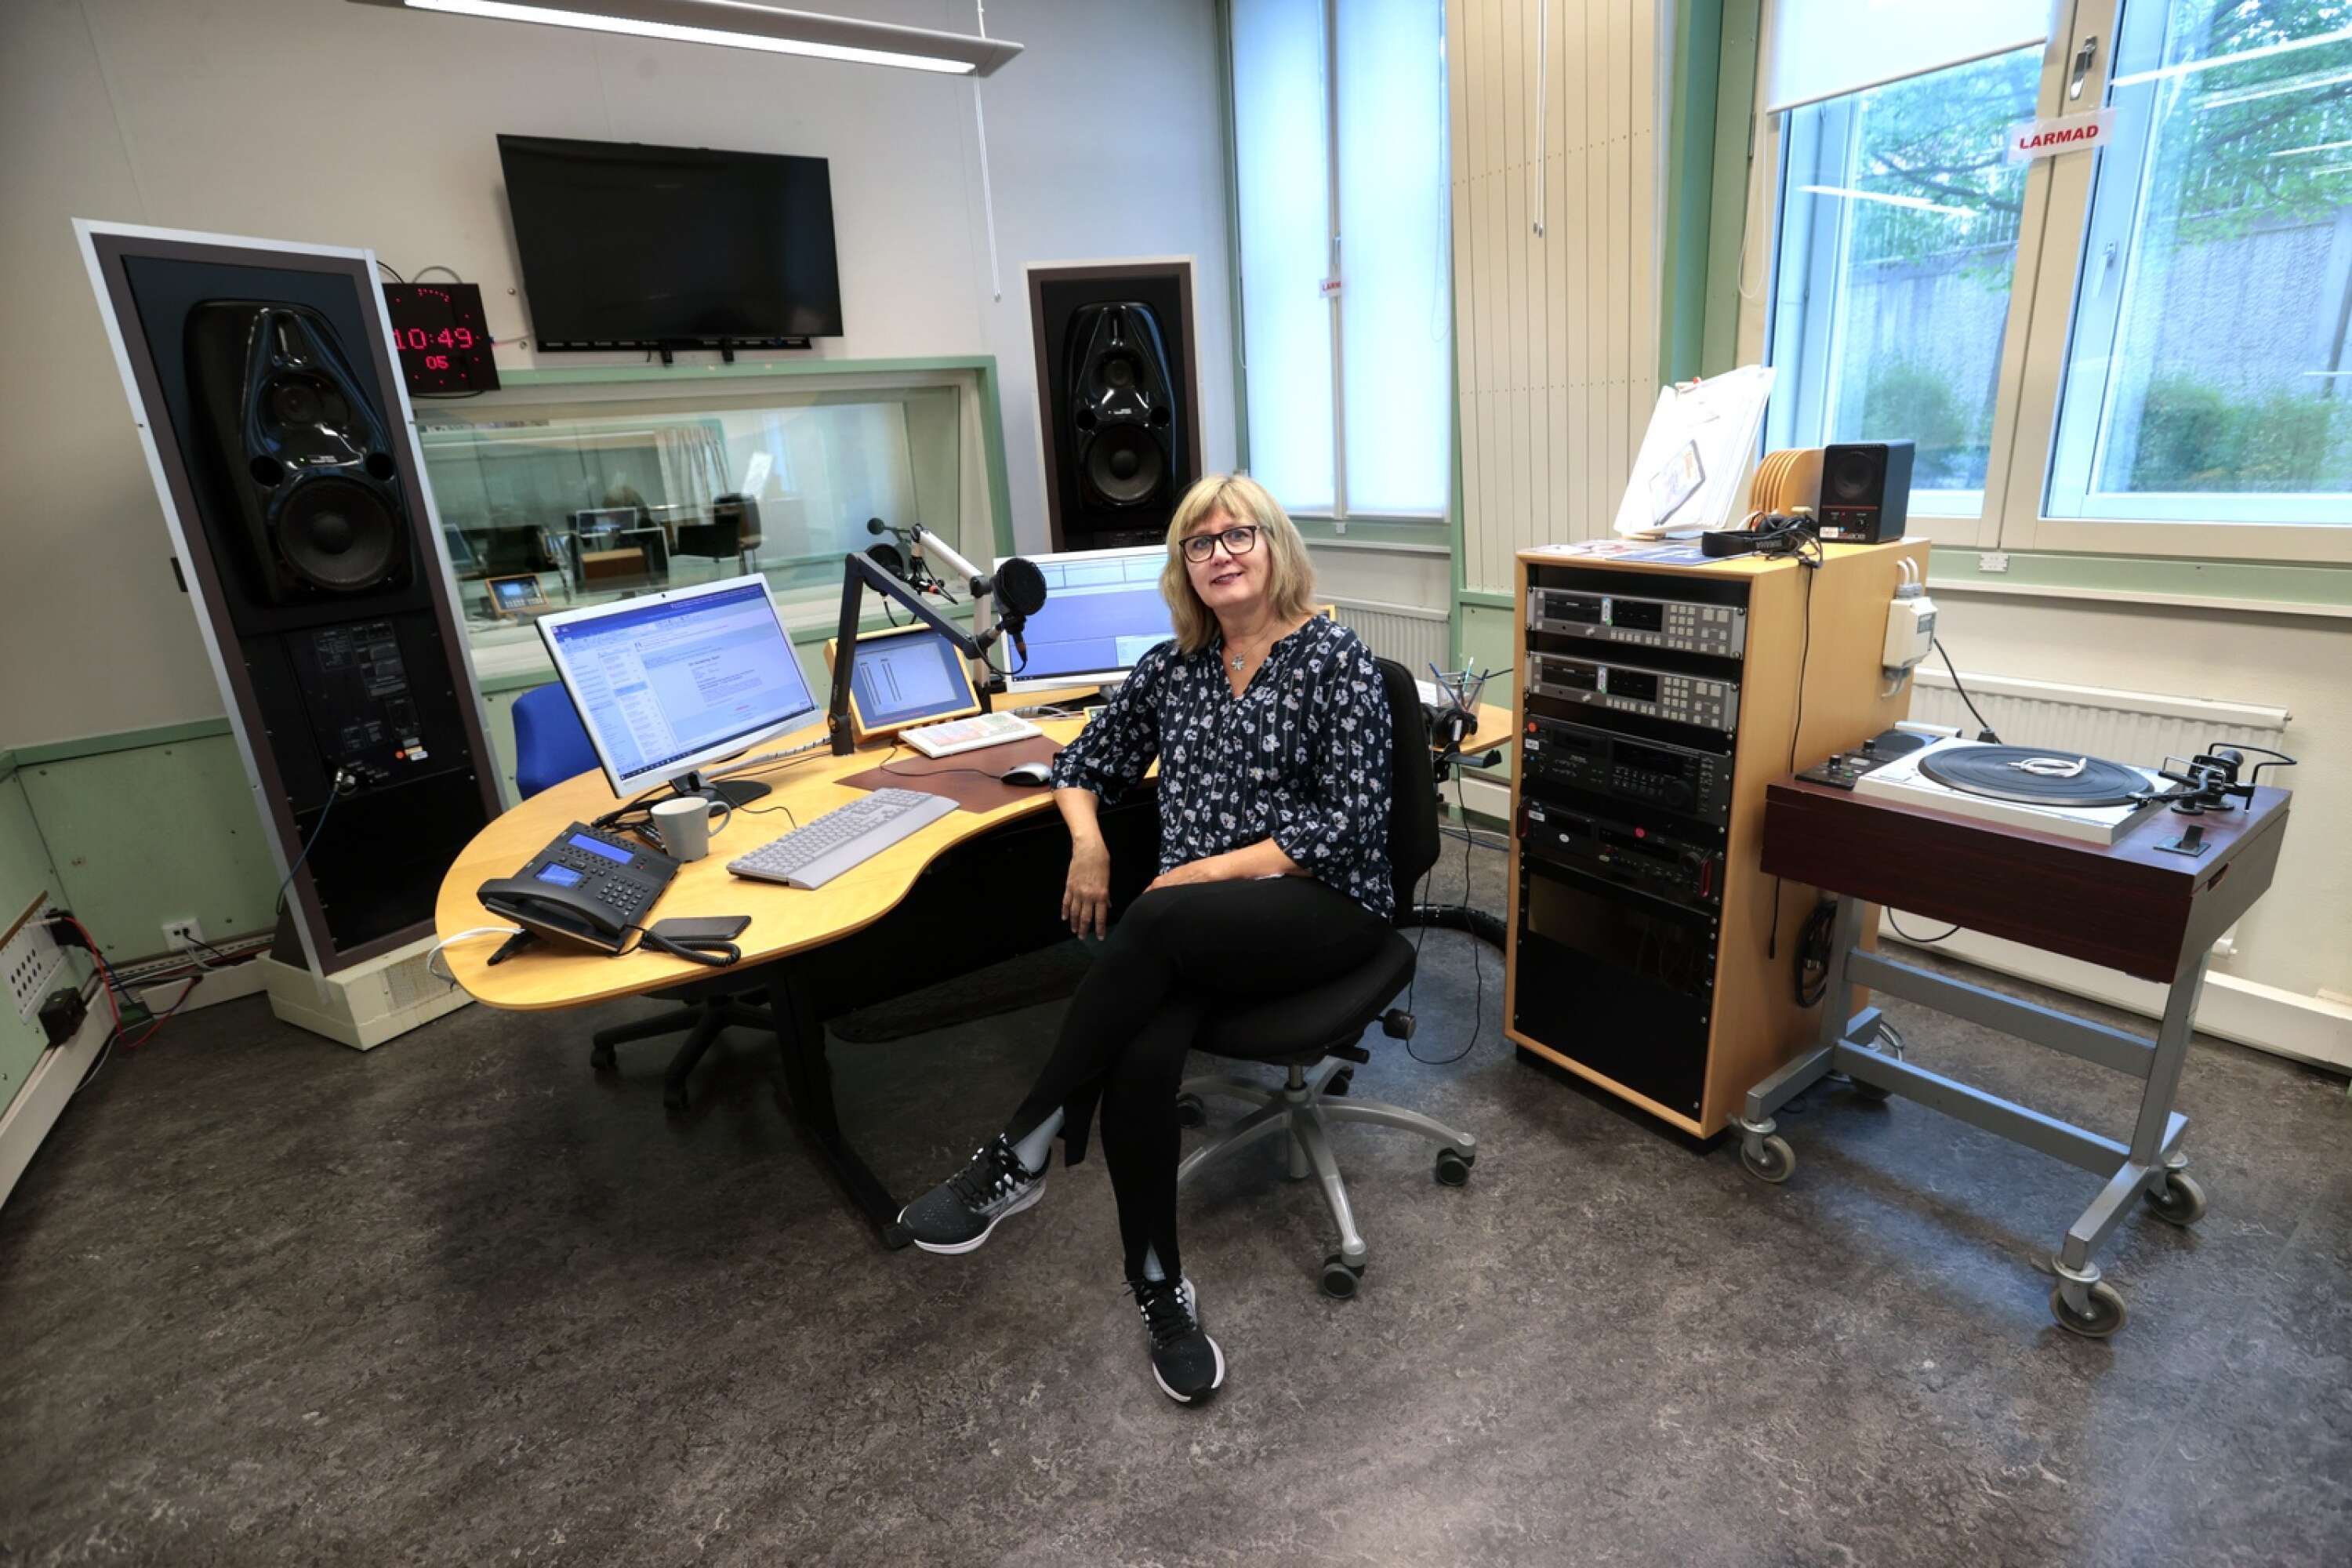 Den 24 september gör Ulla Walldén sin sista arbetsdag på P4 Värmland. Det senaste året har hon jobbat som nyhetssändare och kvällsreporter.